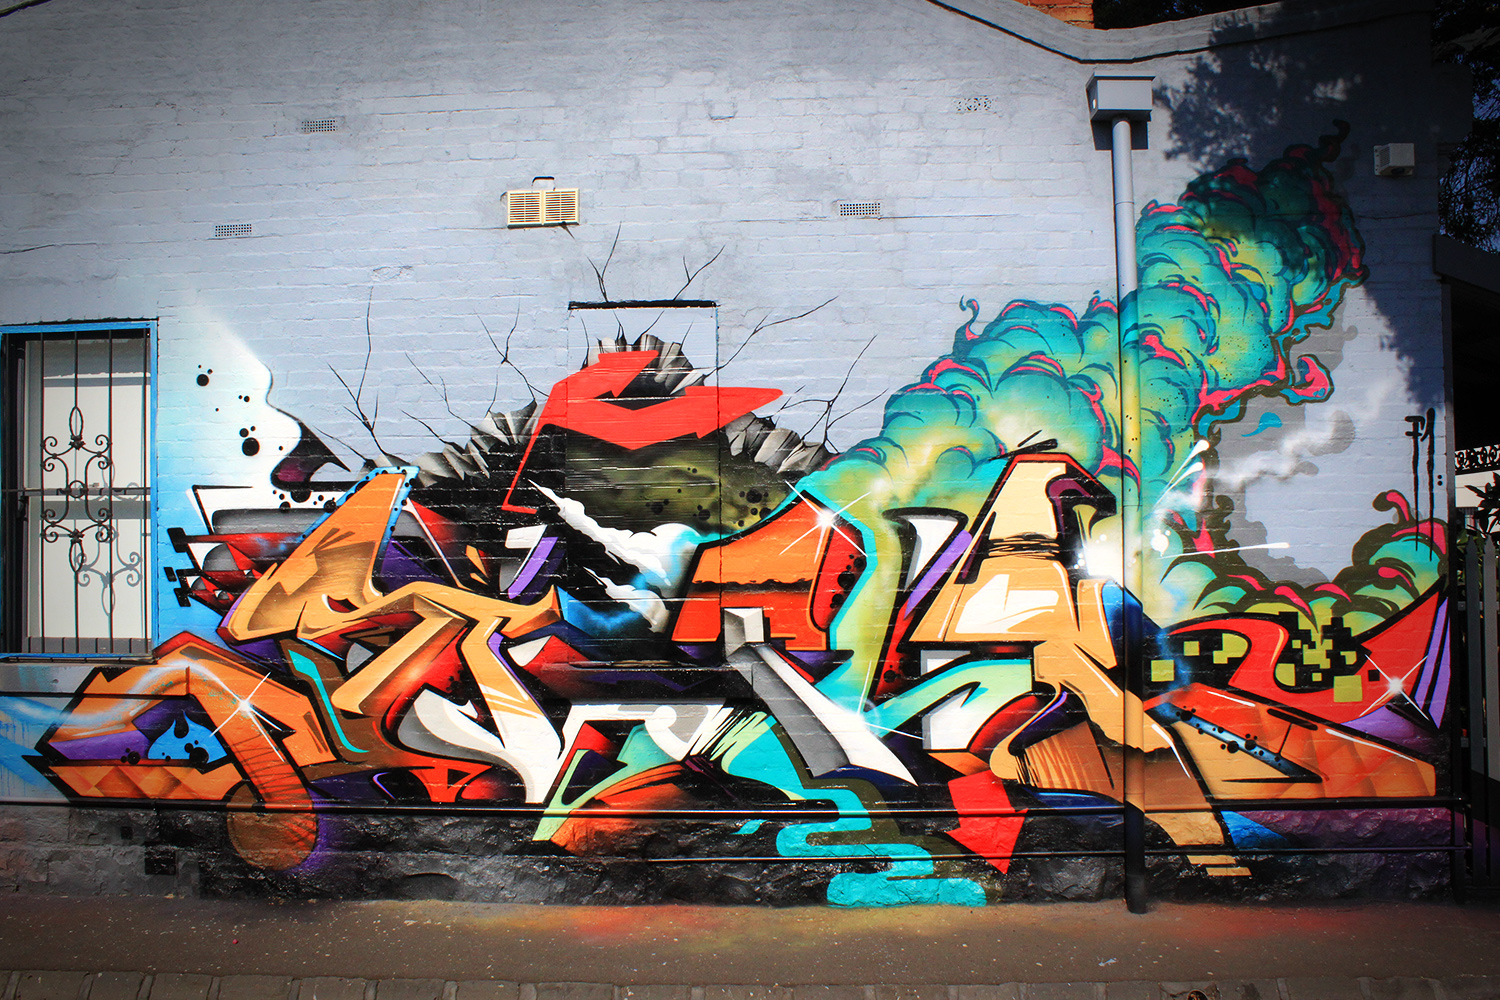 Creative Graffiti: Graffiti